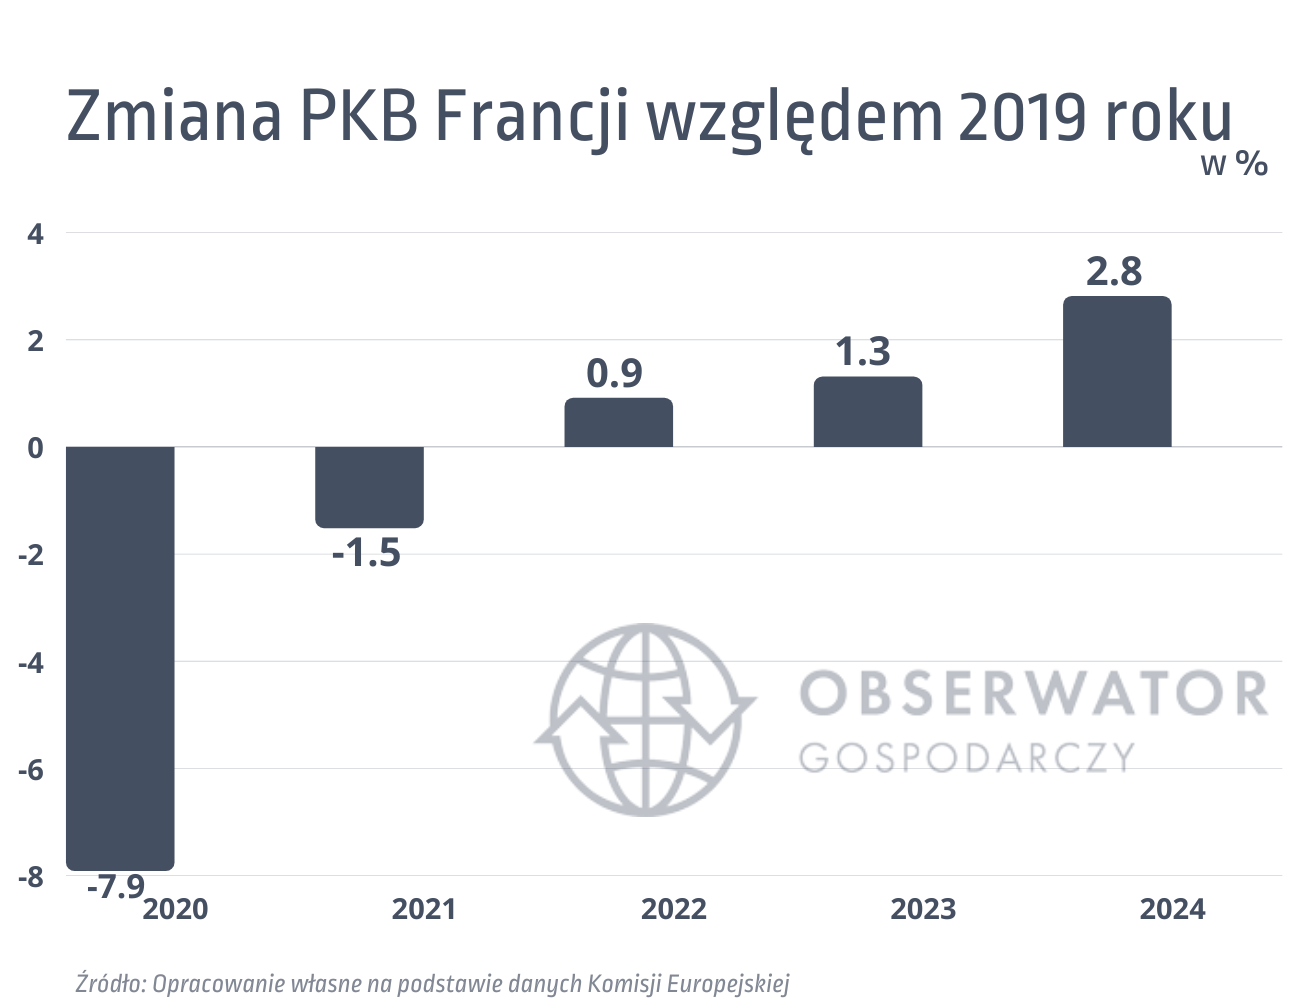 Zmiana PKB Francji względem 2019 roku